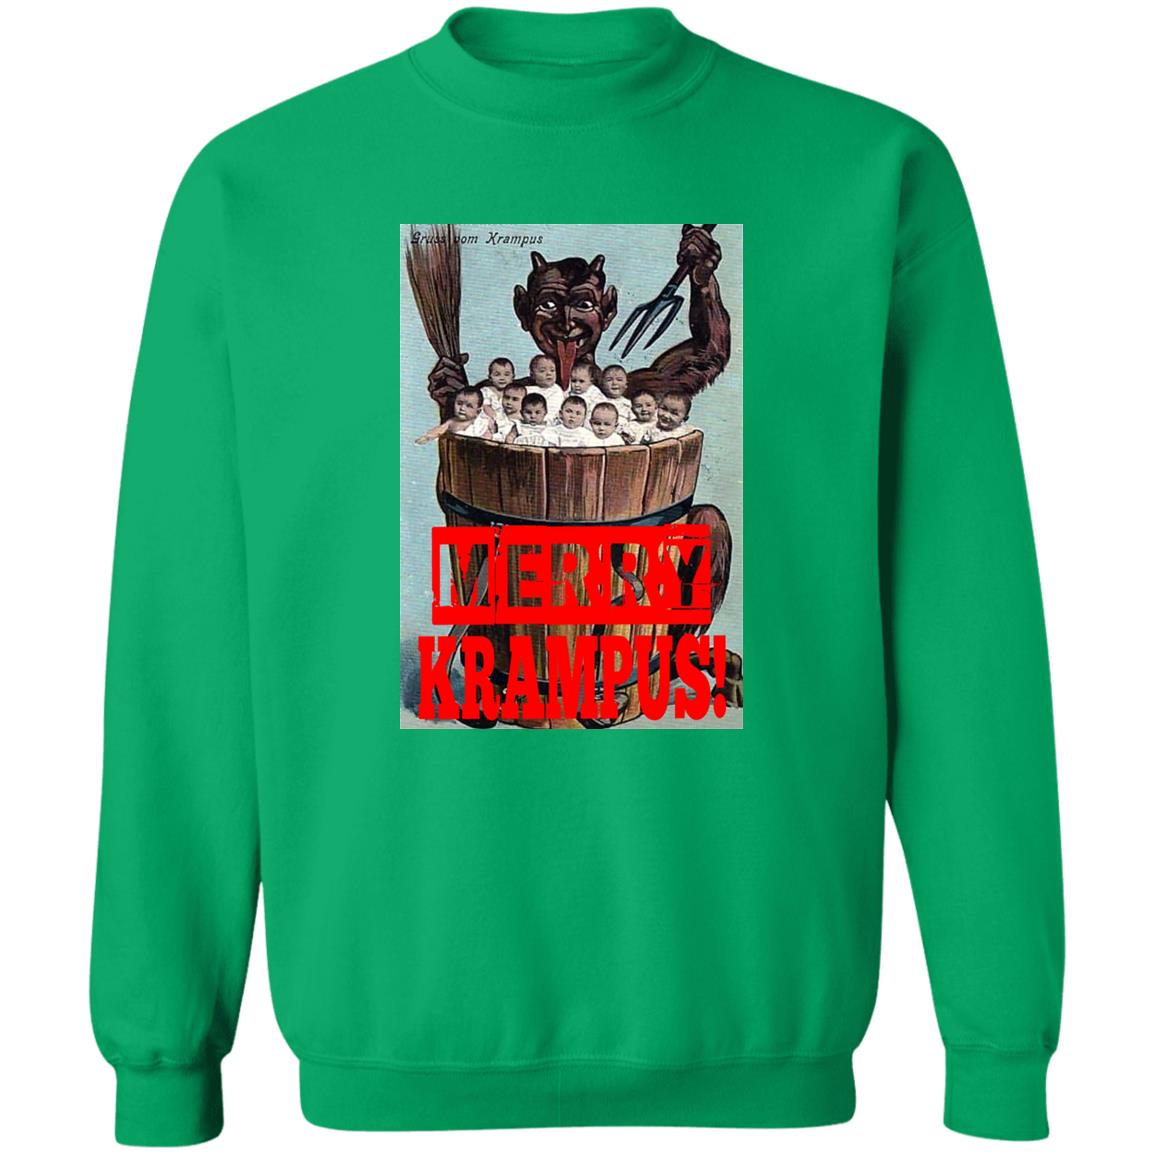 Krampus Sweatshirt, Christmas Horror Fan Sweatshirt, Creepy Christmas shirt, Evil Christmas Horror sweat shirt, Merry Krampus Shirt